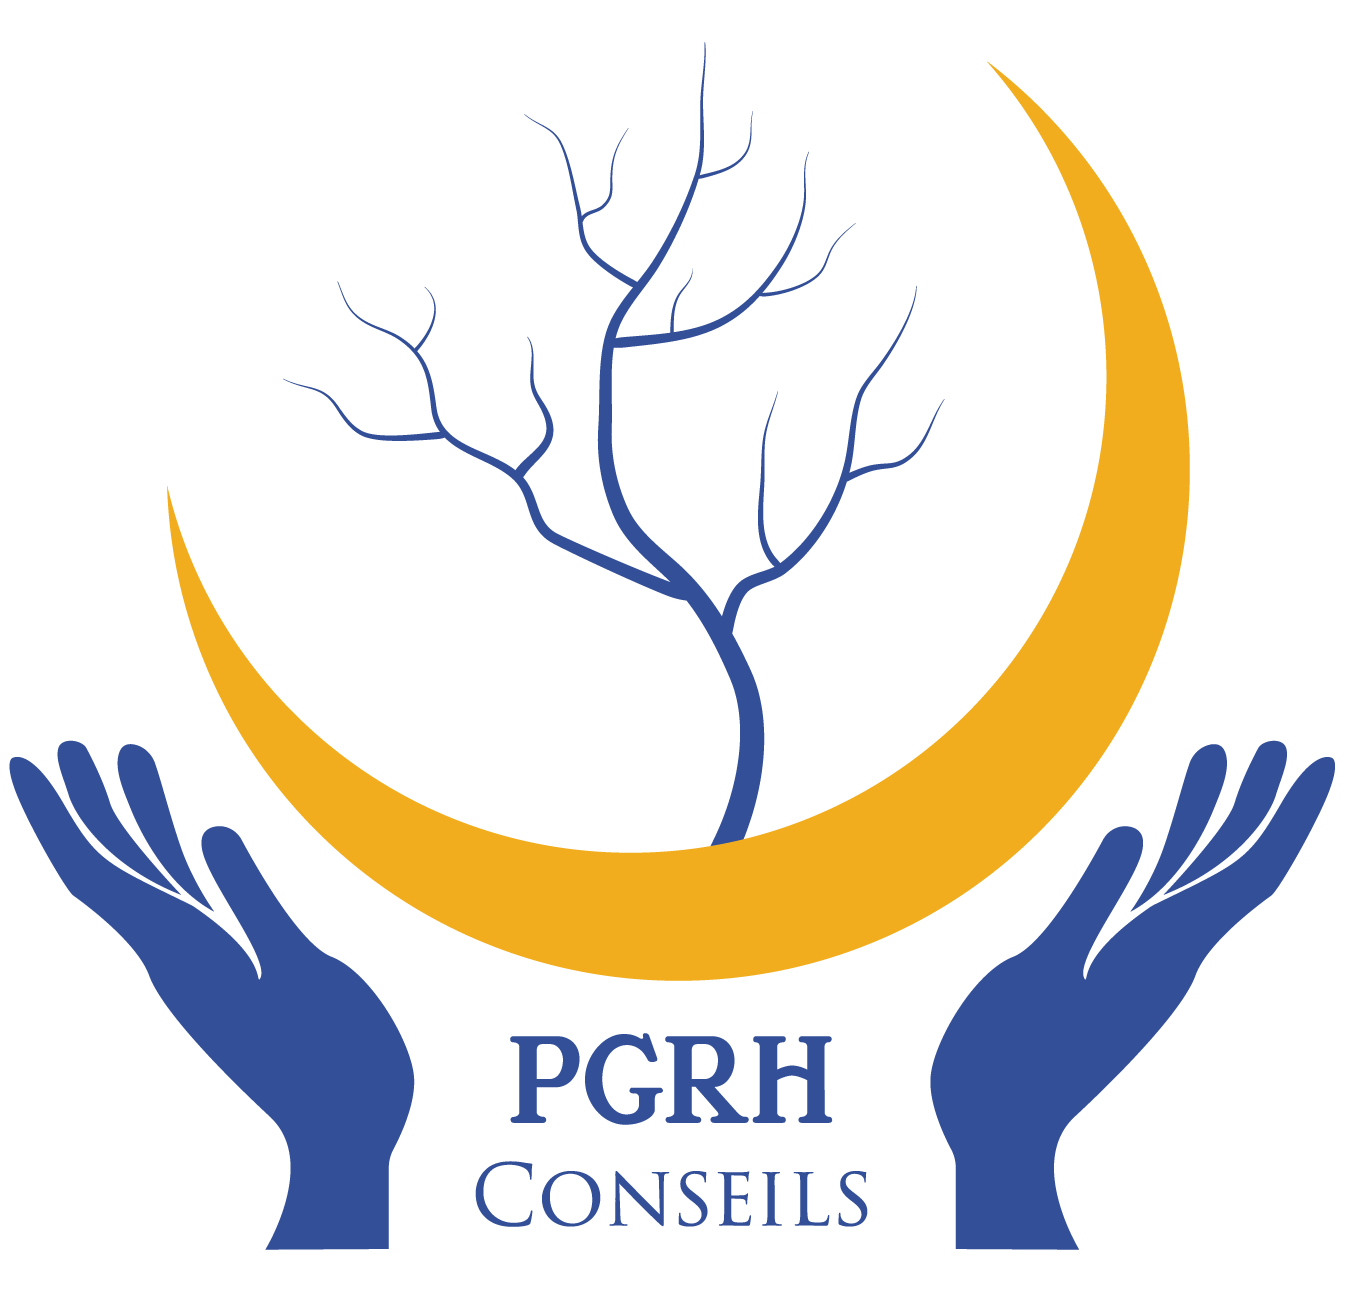 PGRH CONSEILS